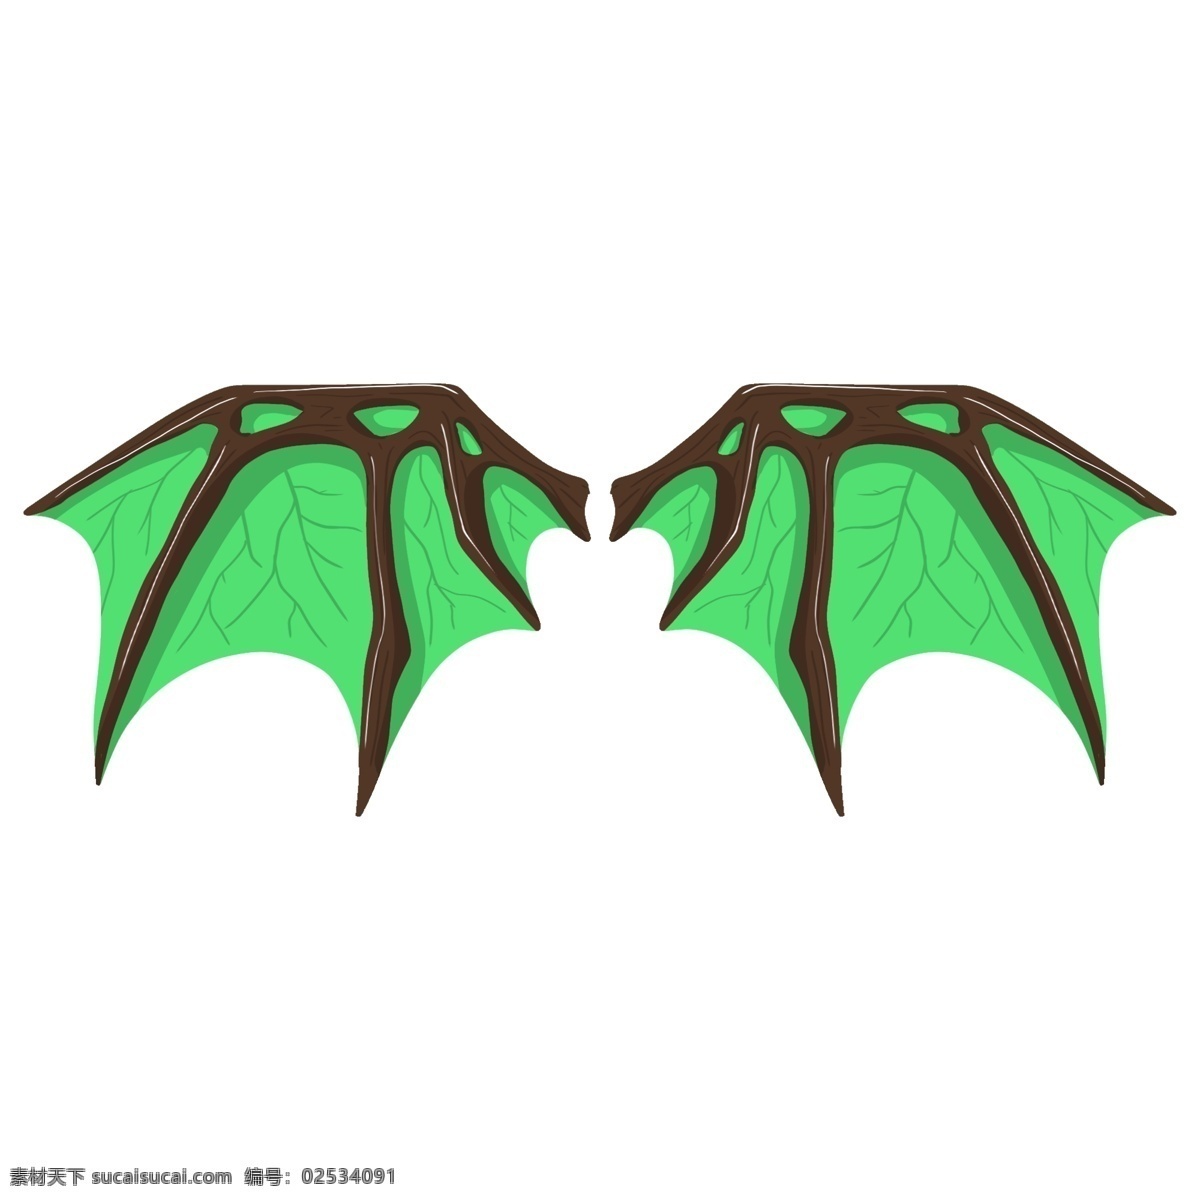 绿色 恶魔 翼 插画 绿色的翅膀 邪恶的翅膀 卡通插画 手绘翅膀插画 恶魔之翼插画 魔族的翅膀